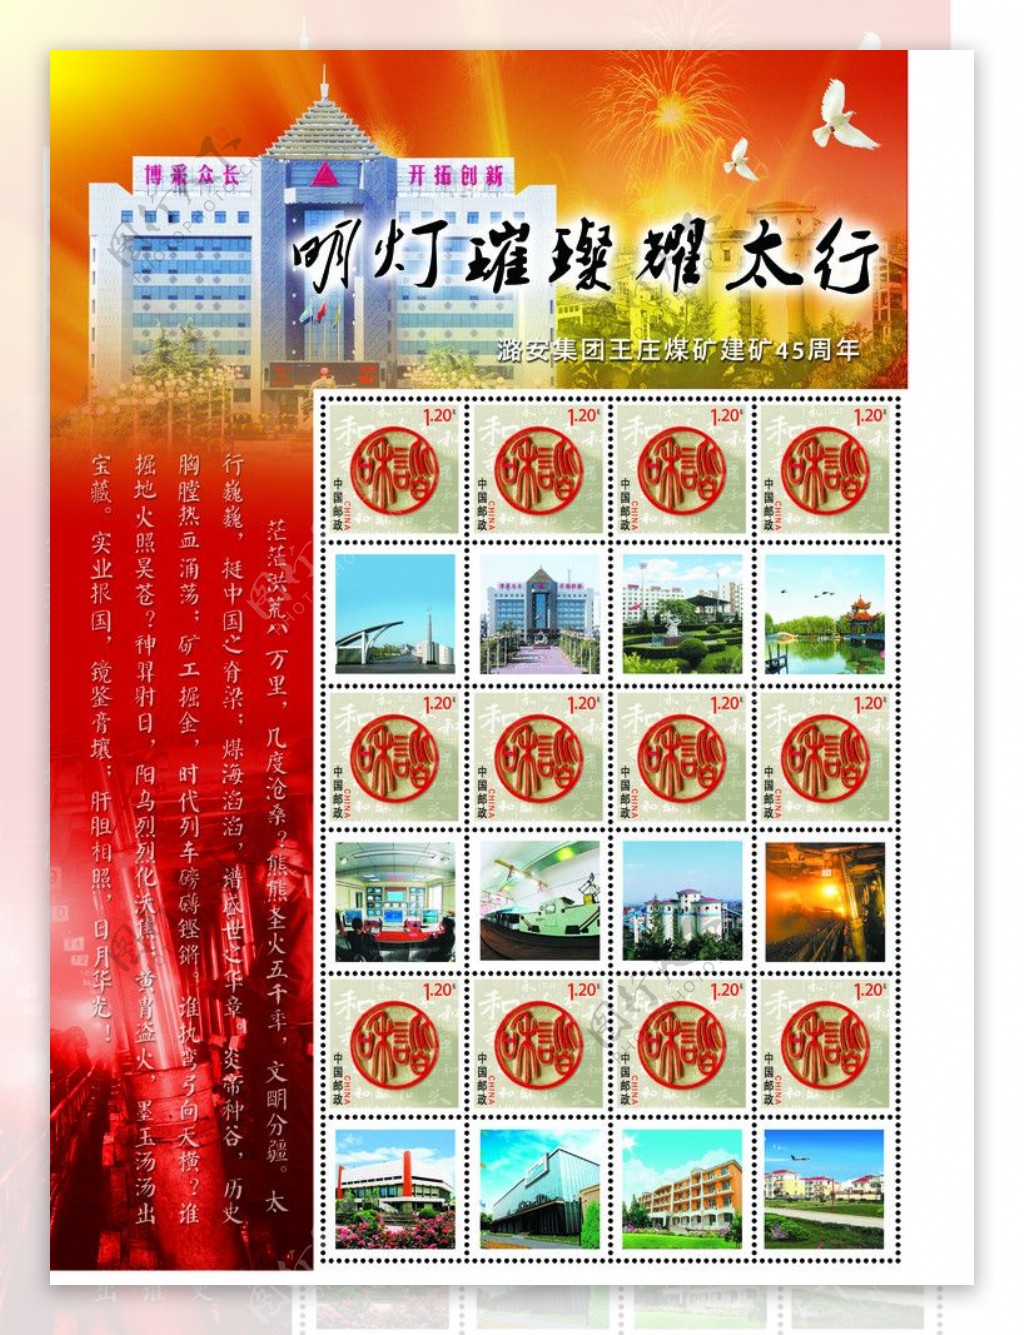 潞安集团王庄煤矿个性化邮票图片